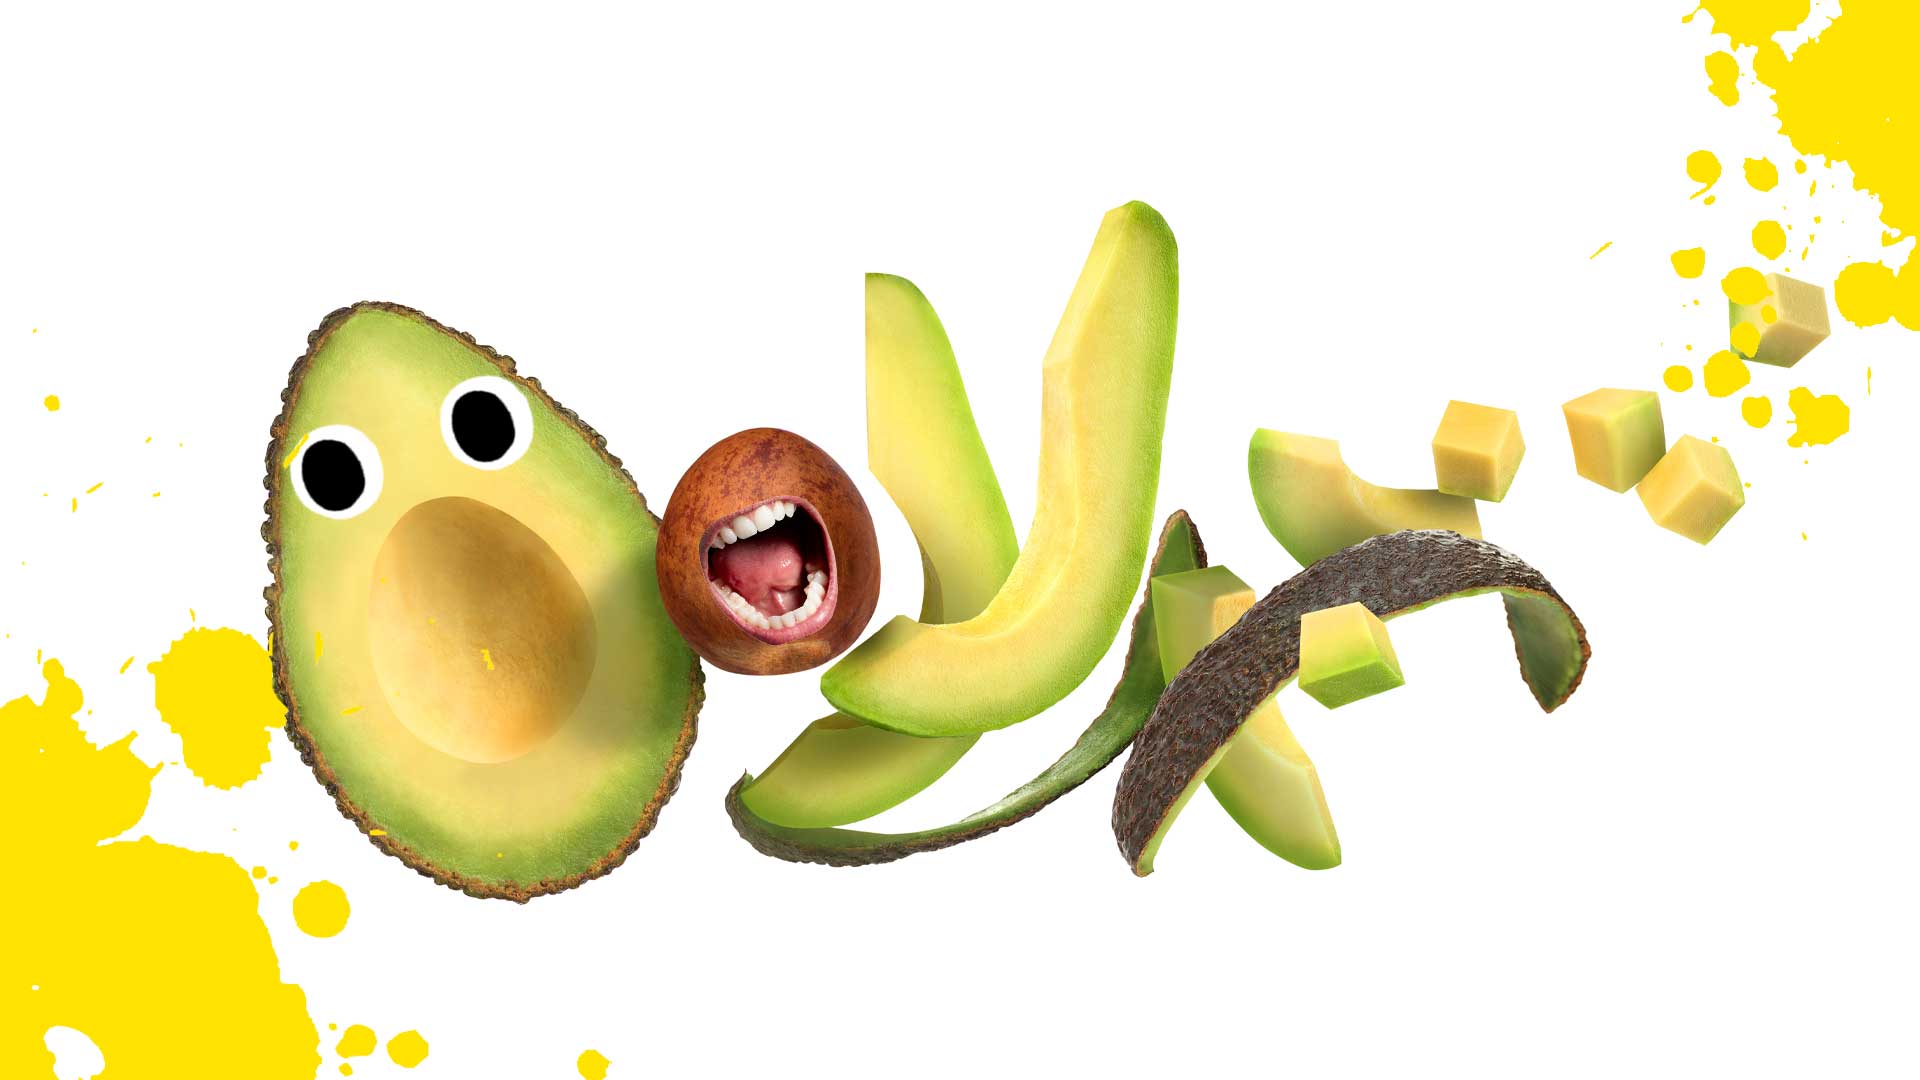 An exploding avocado